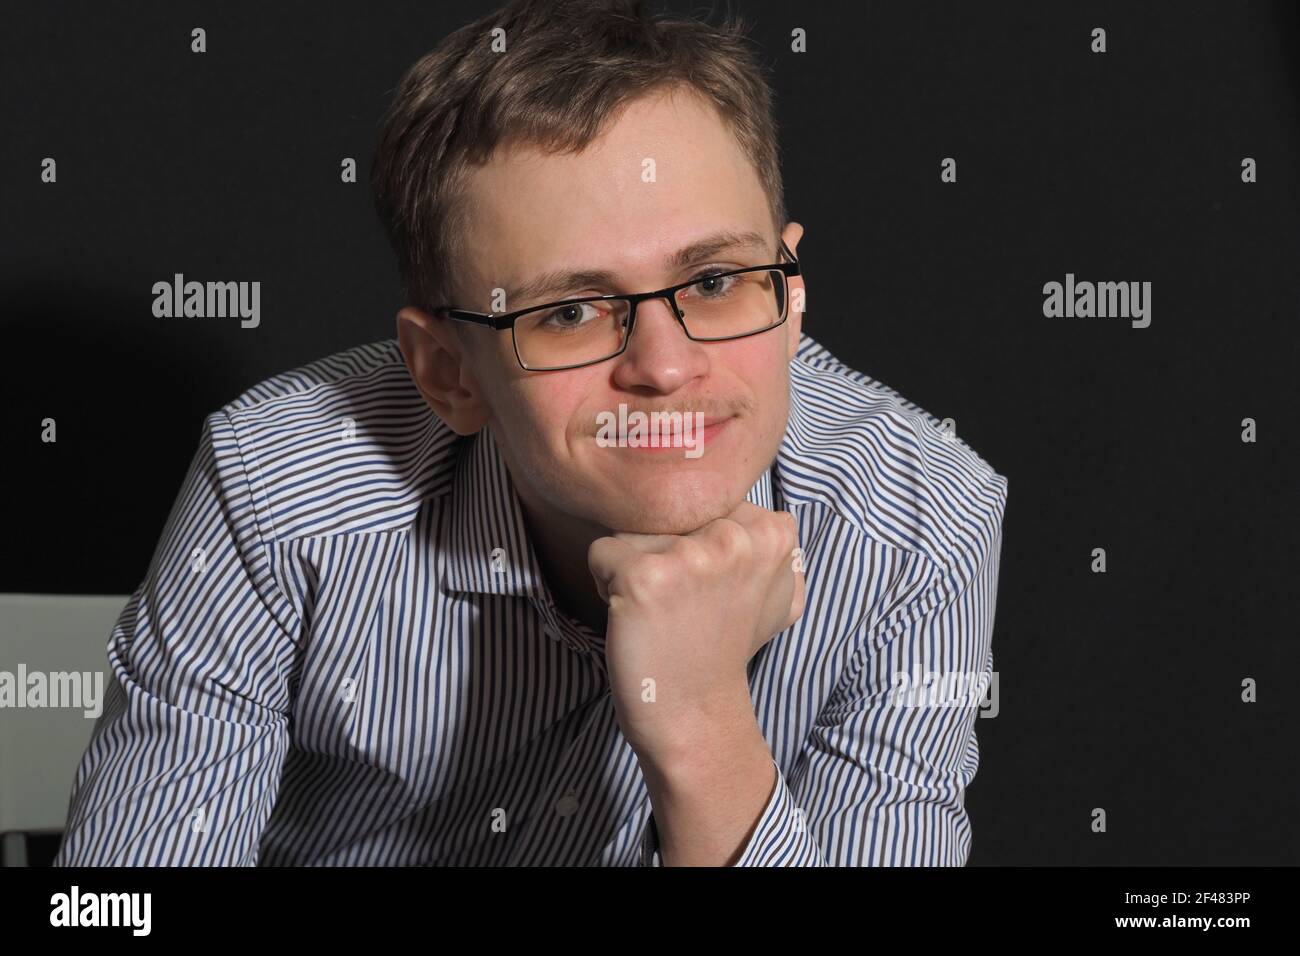 Das Porträt eines jungen Mannes von europäischen Auftritt in Brille lächelnd. Stockfoto